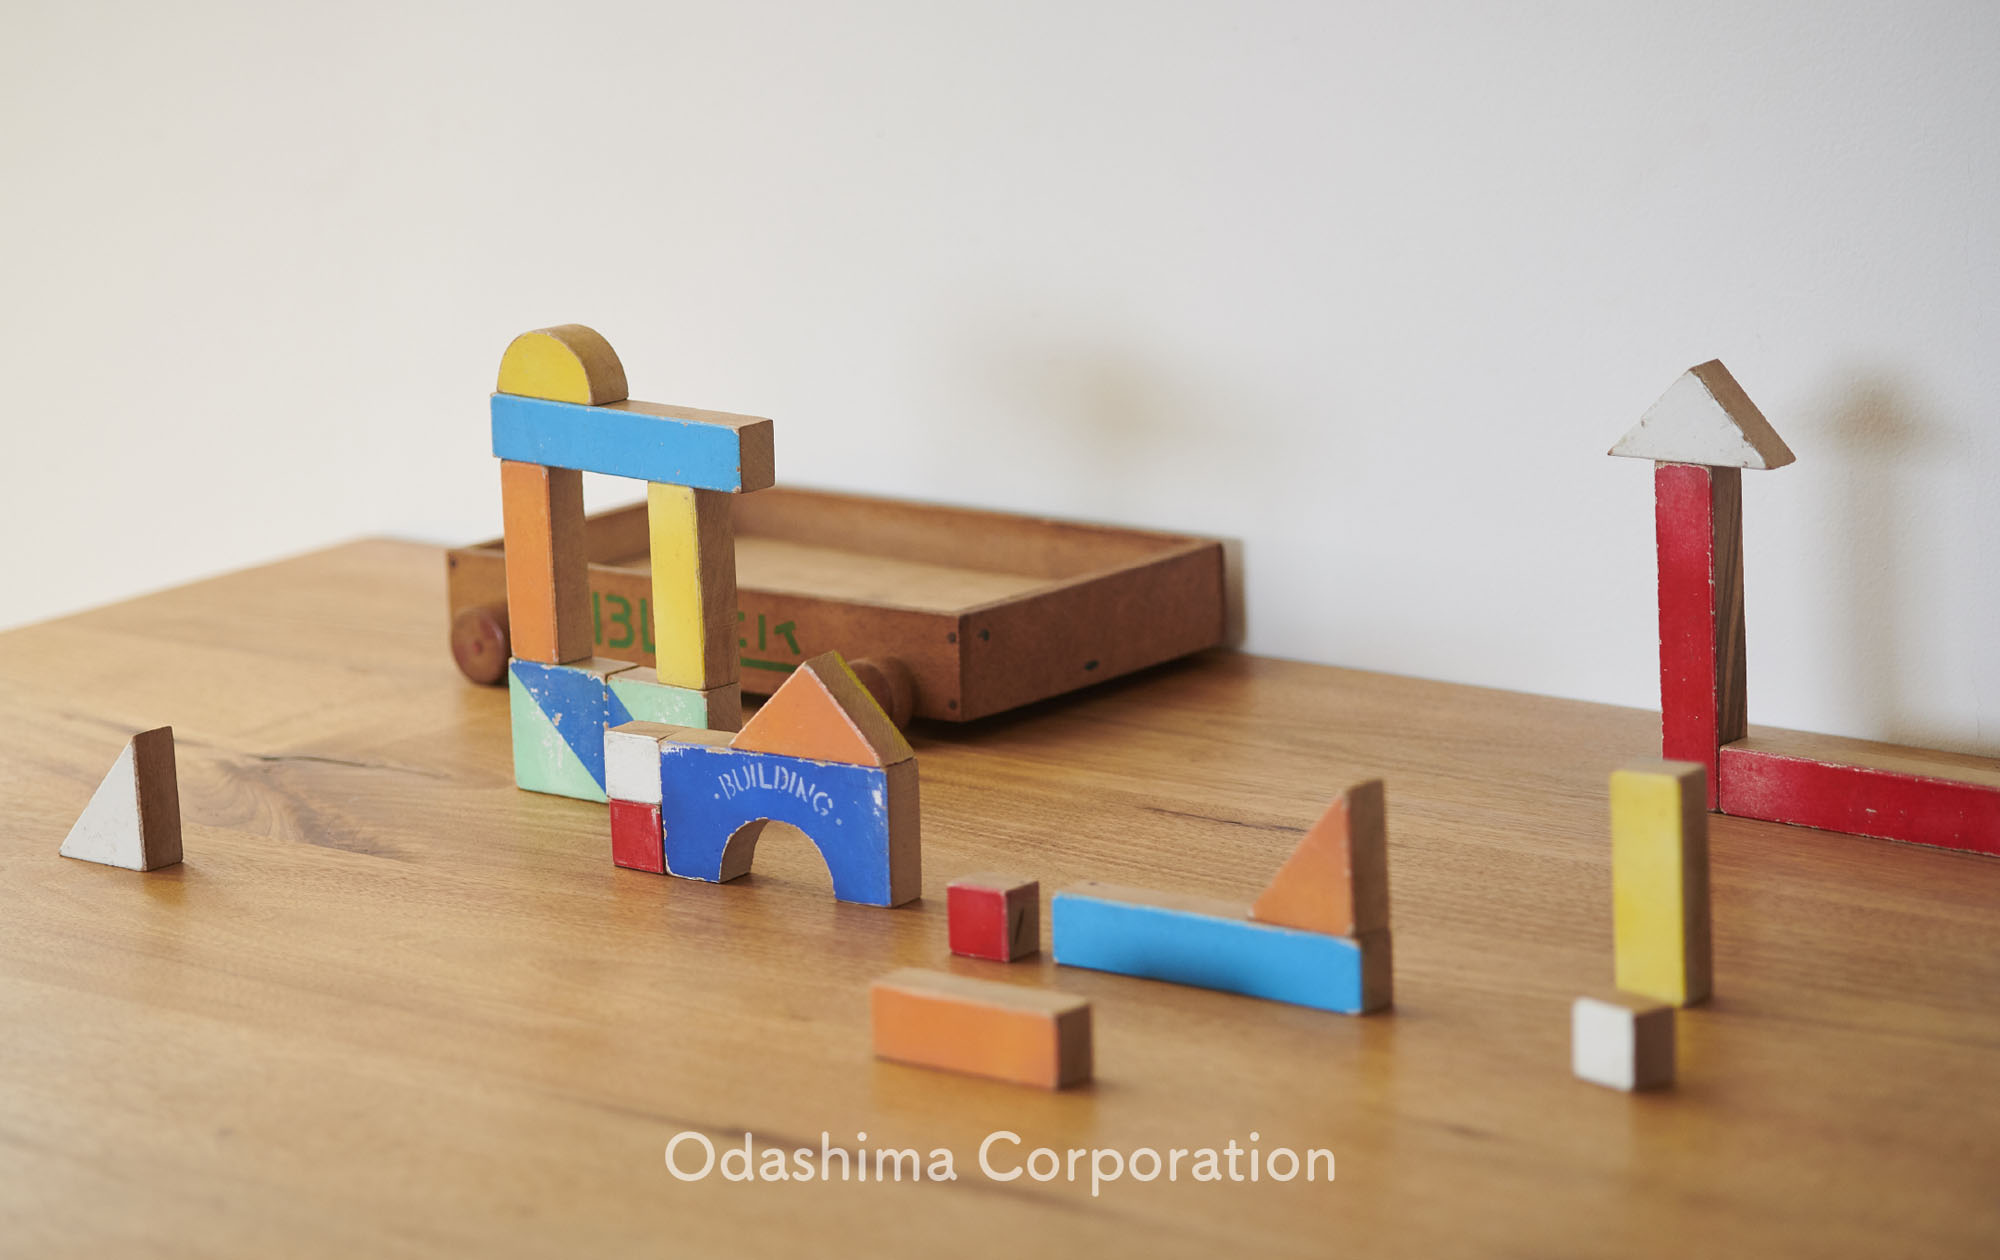 ODASHIMA CORPORATION